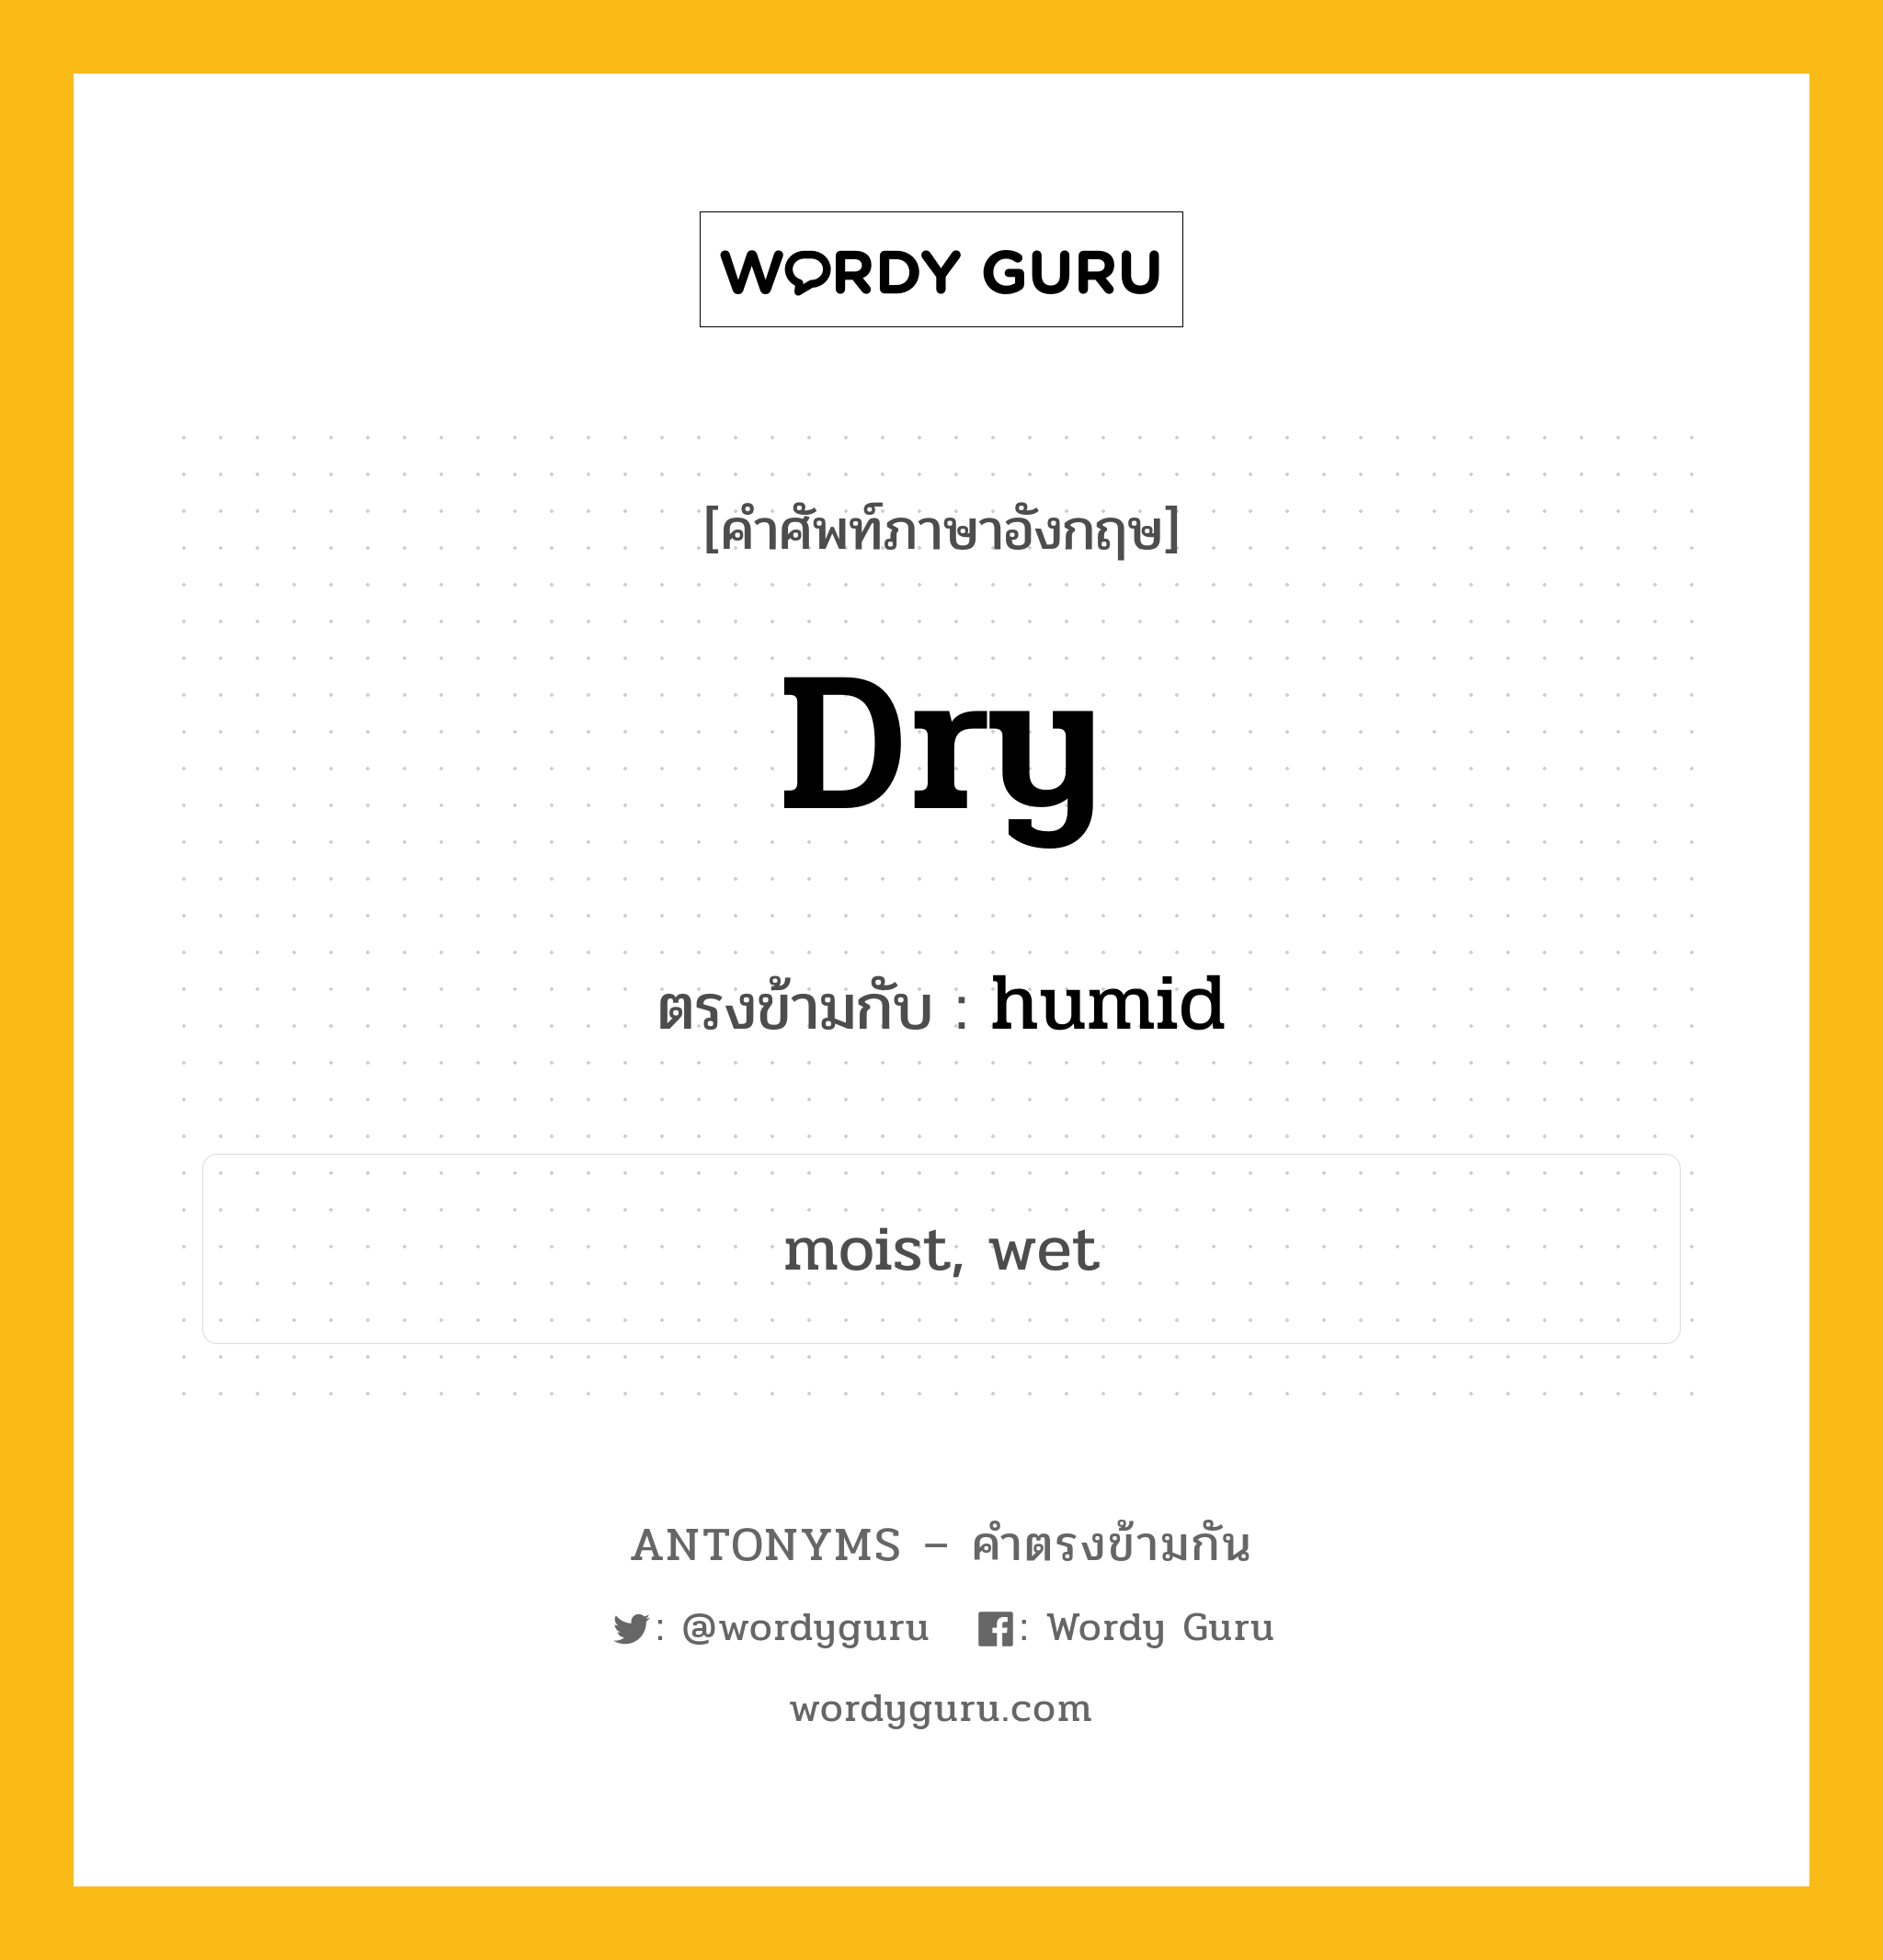 dry เป็นคำตรงข้ามกับคำไหนบ้าง?, คำศัพท์ภาษาอังกฤษ dry ตรงข้ามกับ humid หมวด humid